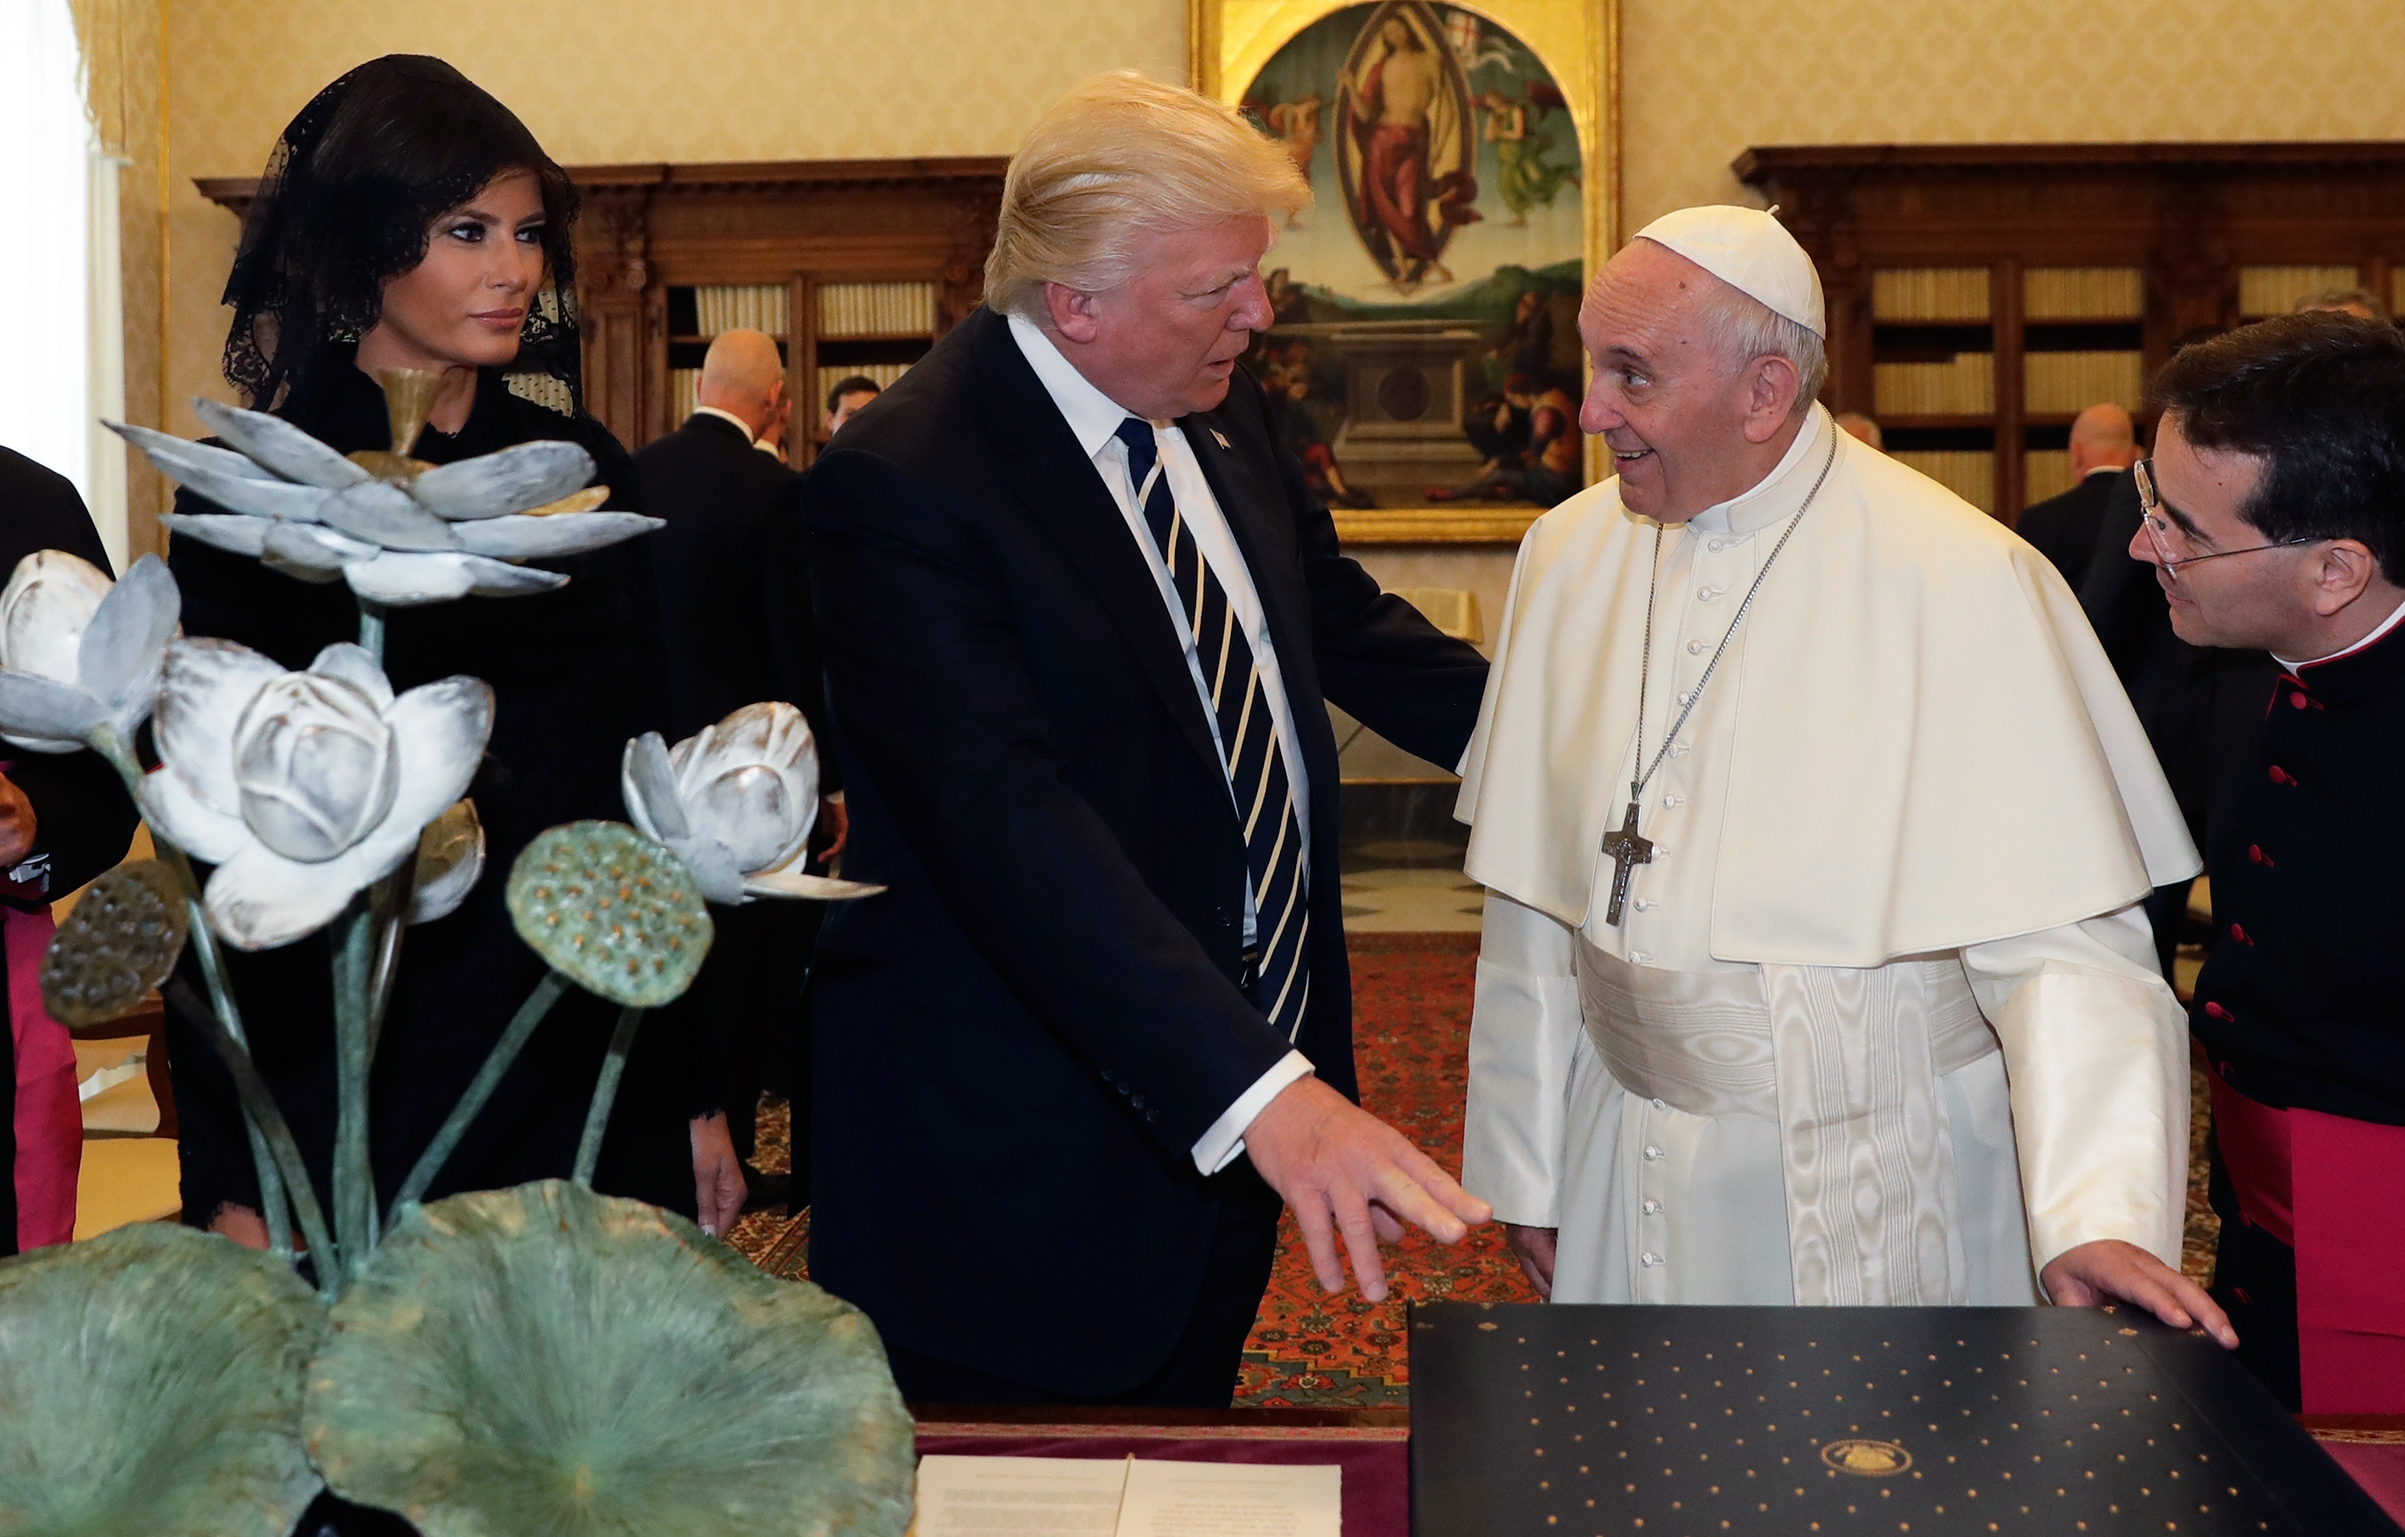 Decrement Antagelser, antagelser. Gætte Stige Pope Francis, Donald Trump: Viral Photo From Vatican Meeting | Time